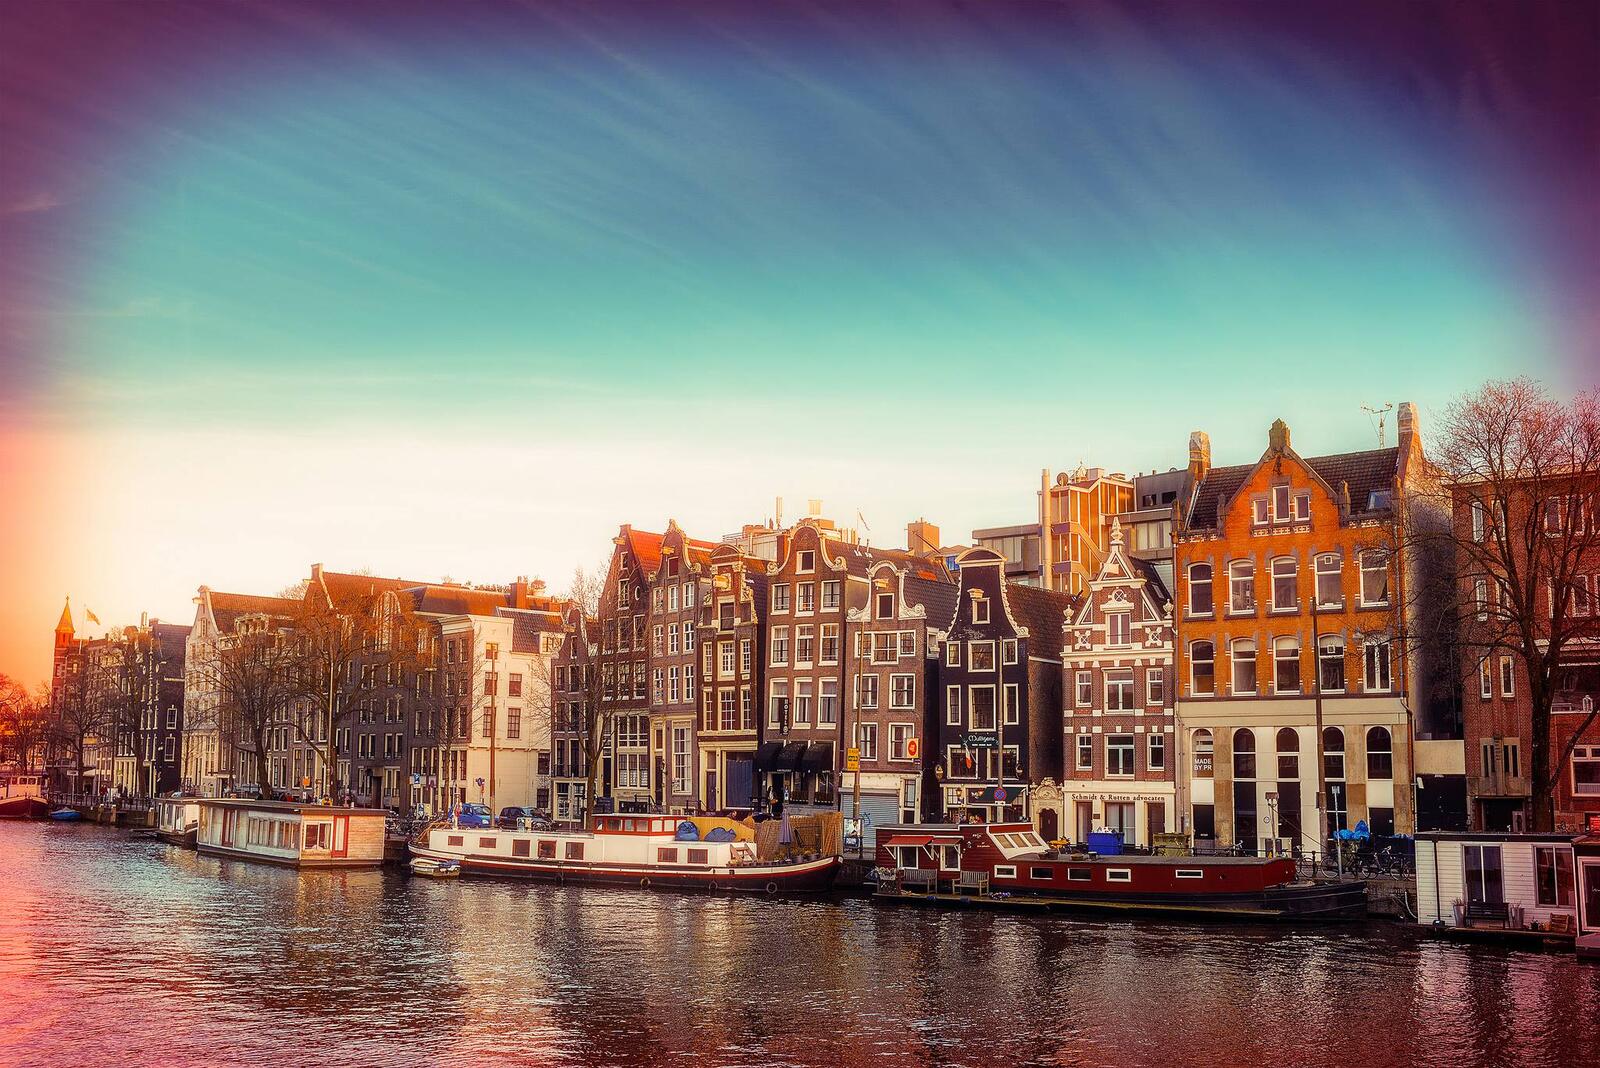 Обои Нидерланды панорама столица и крупнейший город Нидерландов Амстердам на рабочий стол